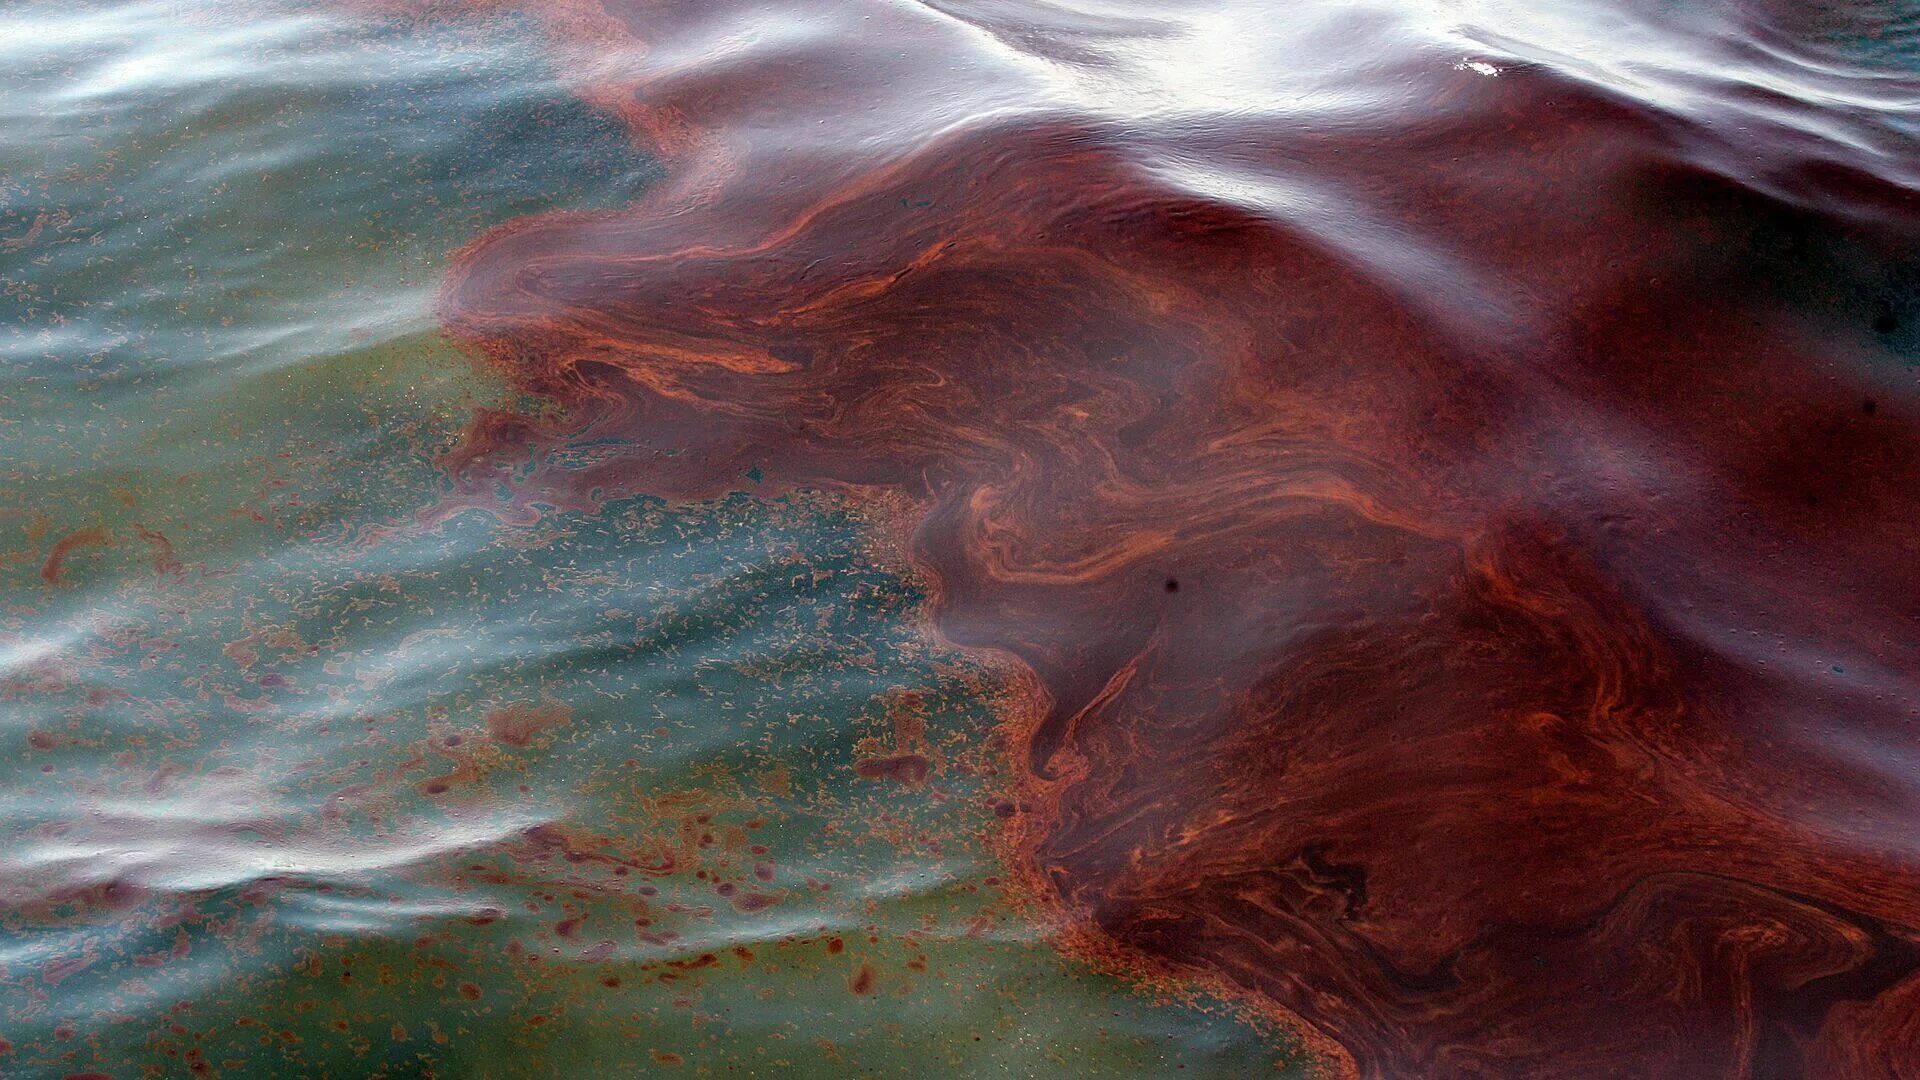 Маслянистая поверхность воды. Разлив нефти в Новороссийске 2021 Спутник. Разлив нефти Новороссийск Спутник. Черное море загрязнено нефтепродуктами. Разлив нефти в мексиканском заливе 2020.